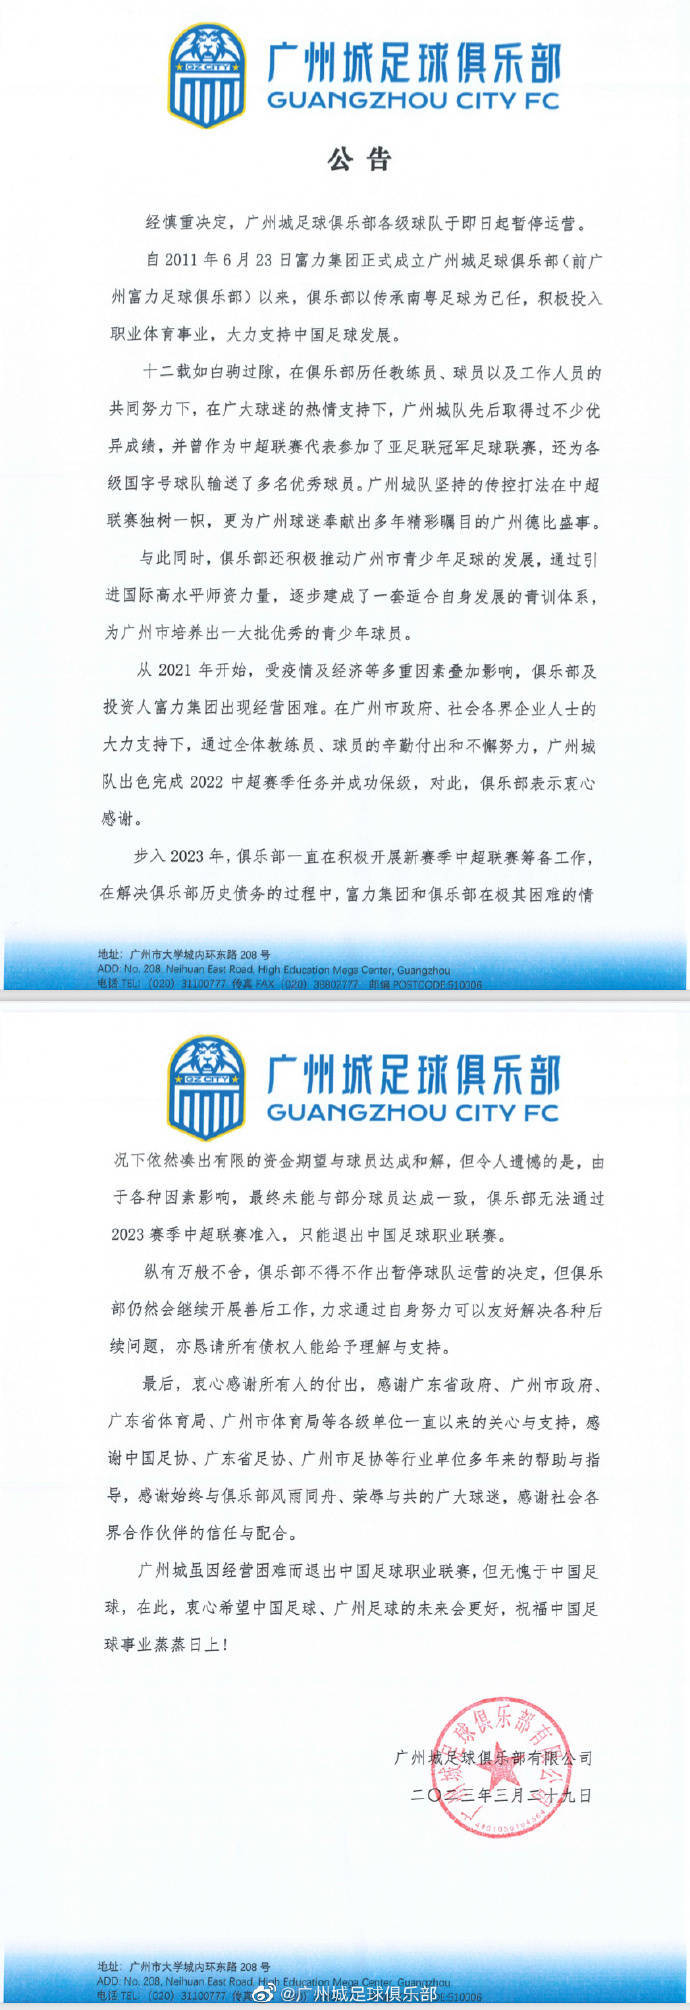 “广州”广州城足球俱乐部宣布停止运营近四年有六家中超俱乐部解散